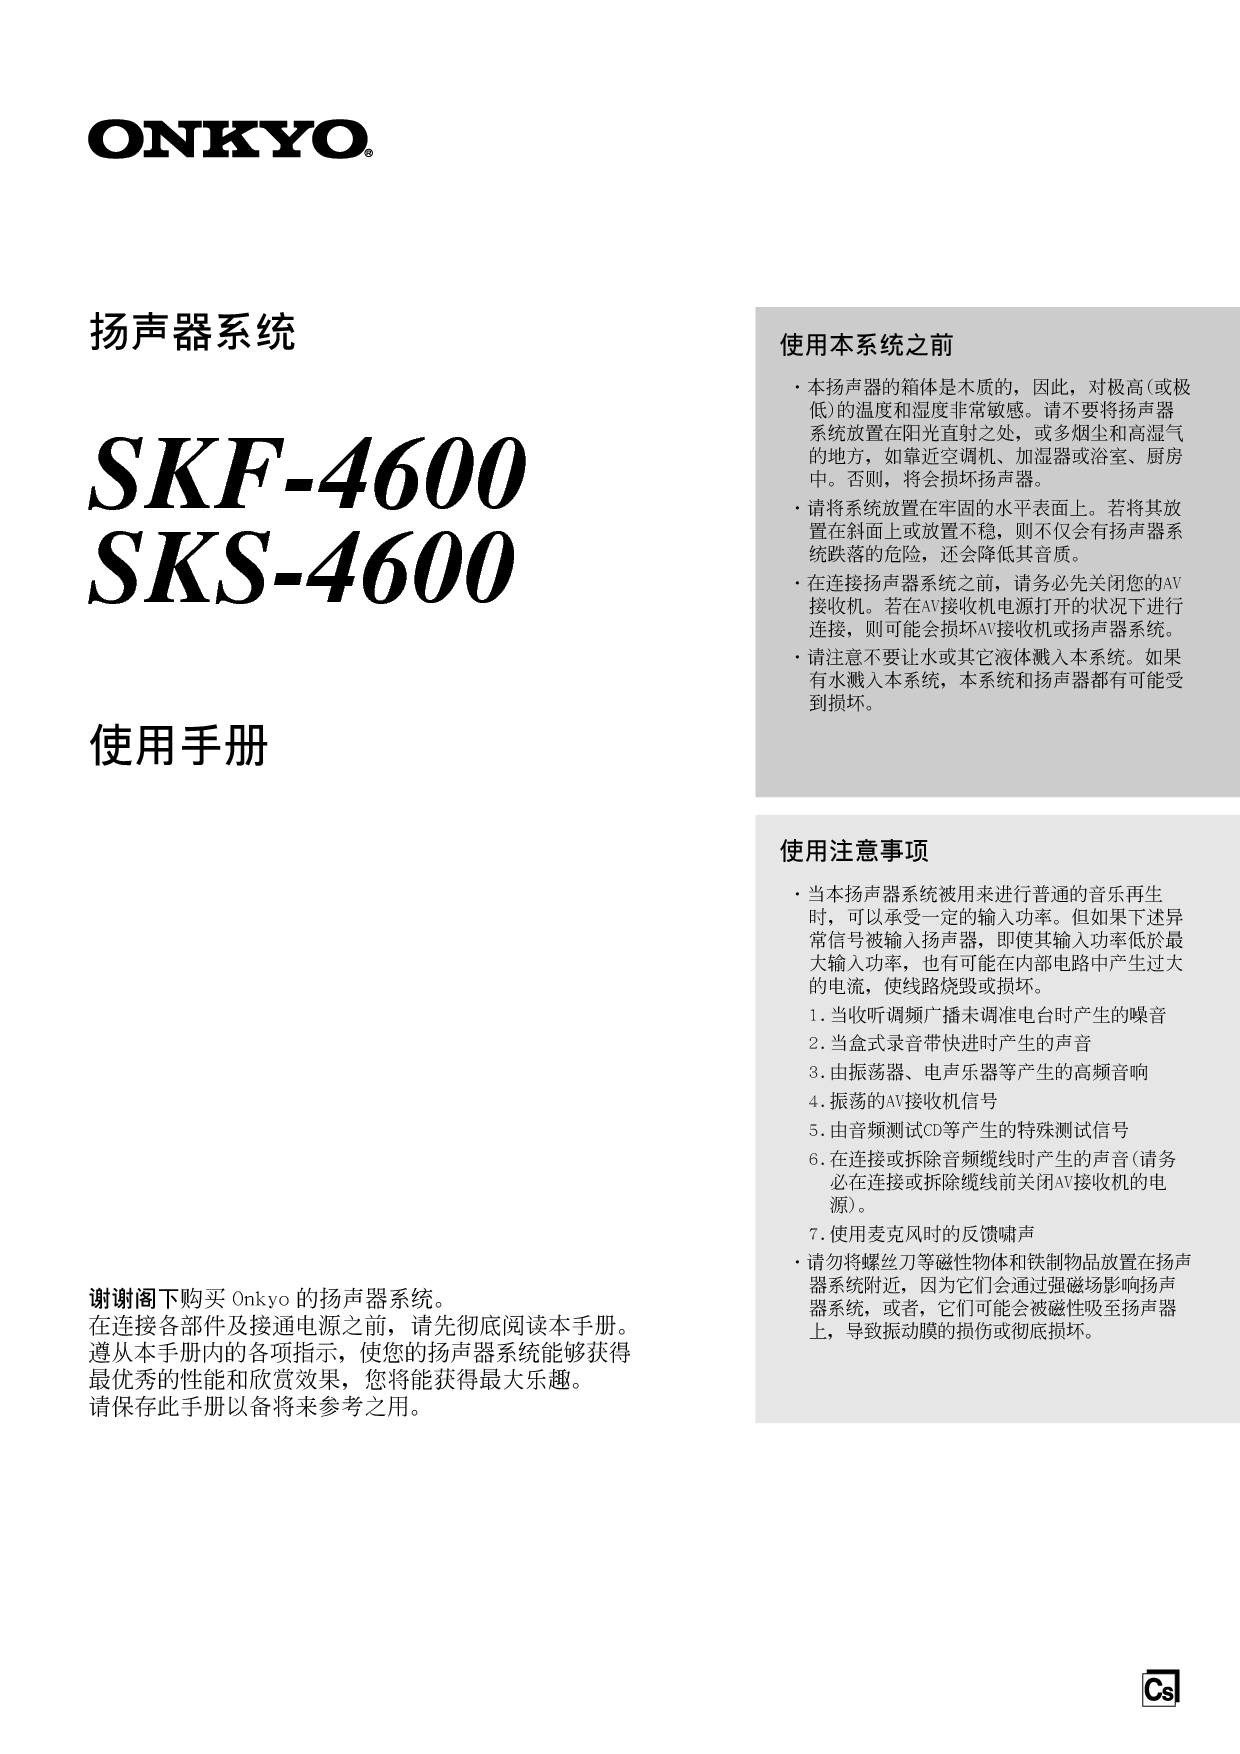 安桥 Onkyo SKF-4600 使用手册 封面